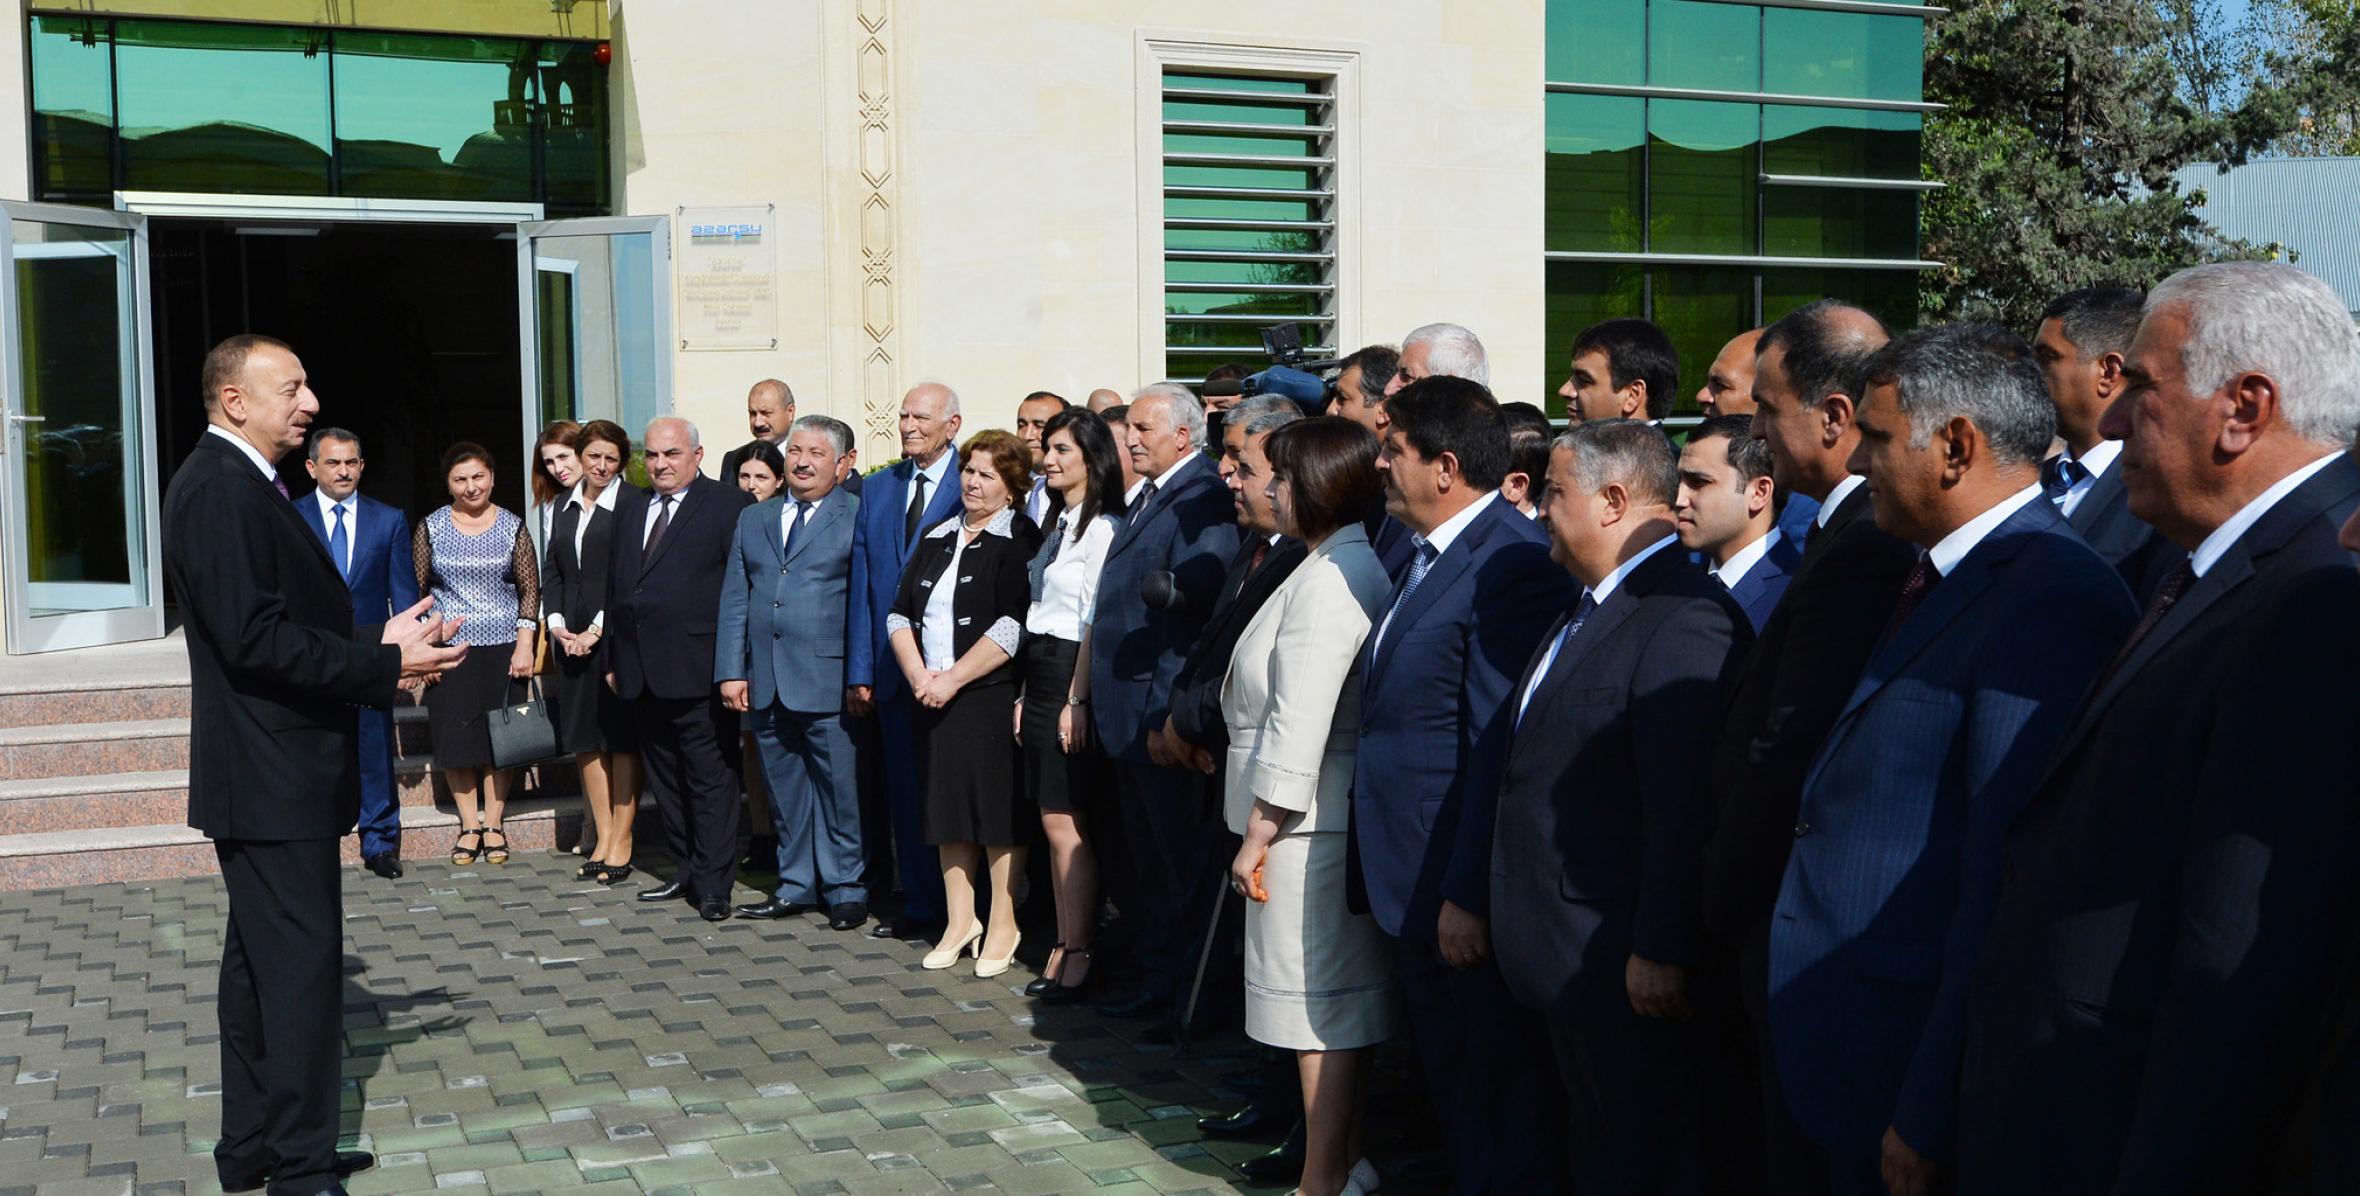 Речь Ильхама Алиева на церемонии, организованной по случаю завершения проекта реконструкции системы водоснабжения города Уджар